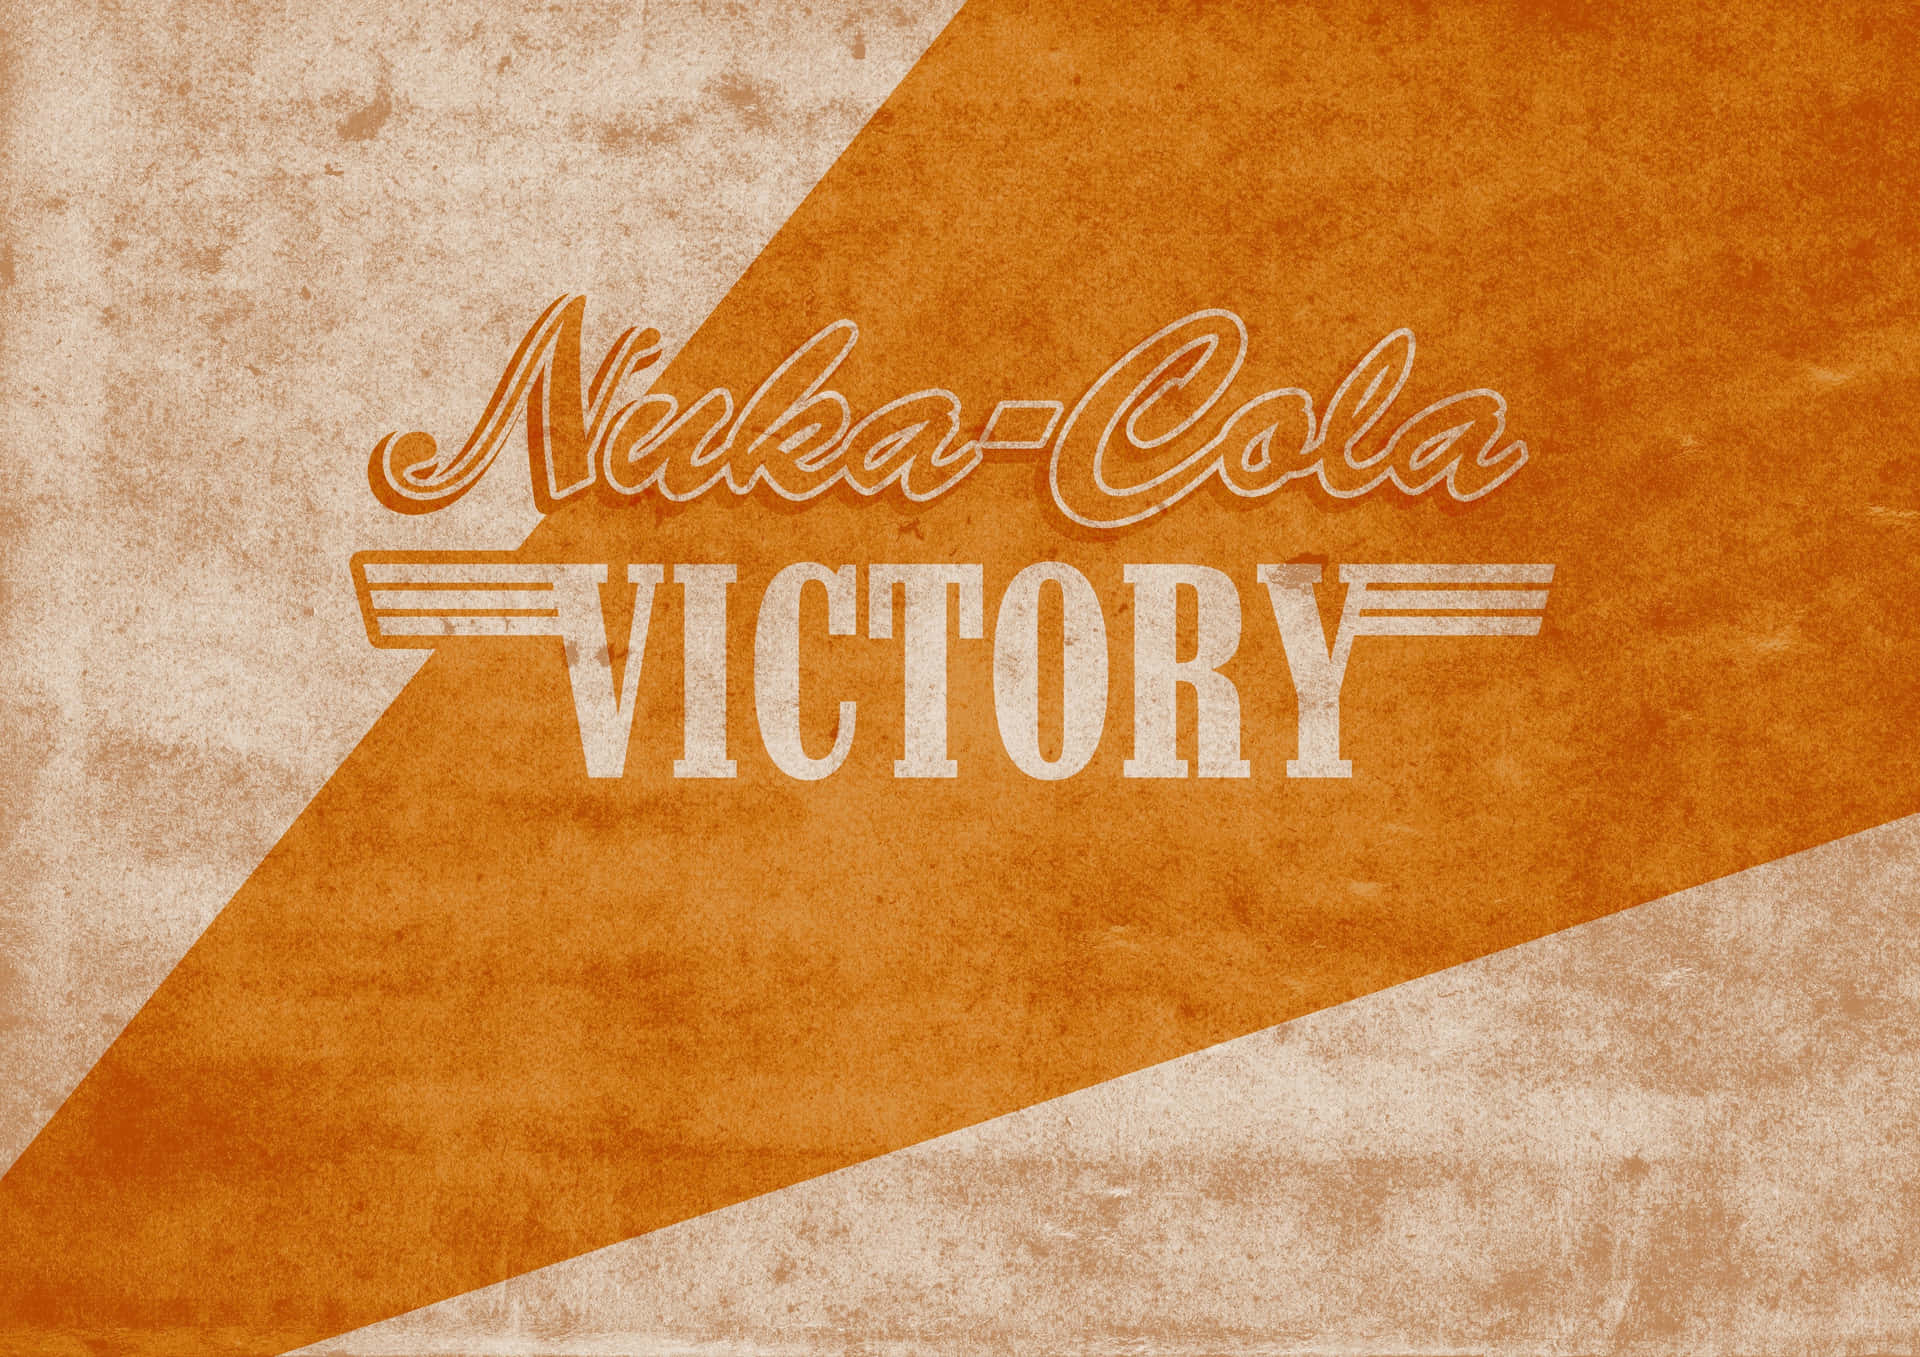 Nikko Cola Victory - Ad Wallpaper